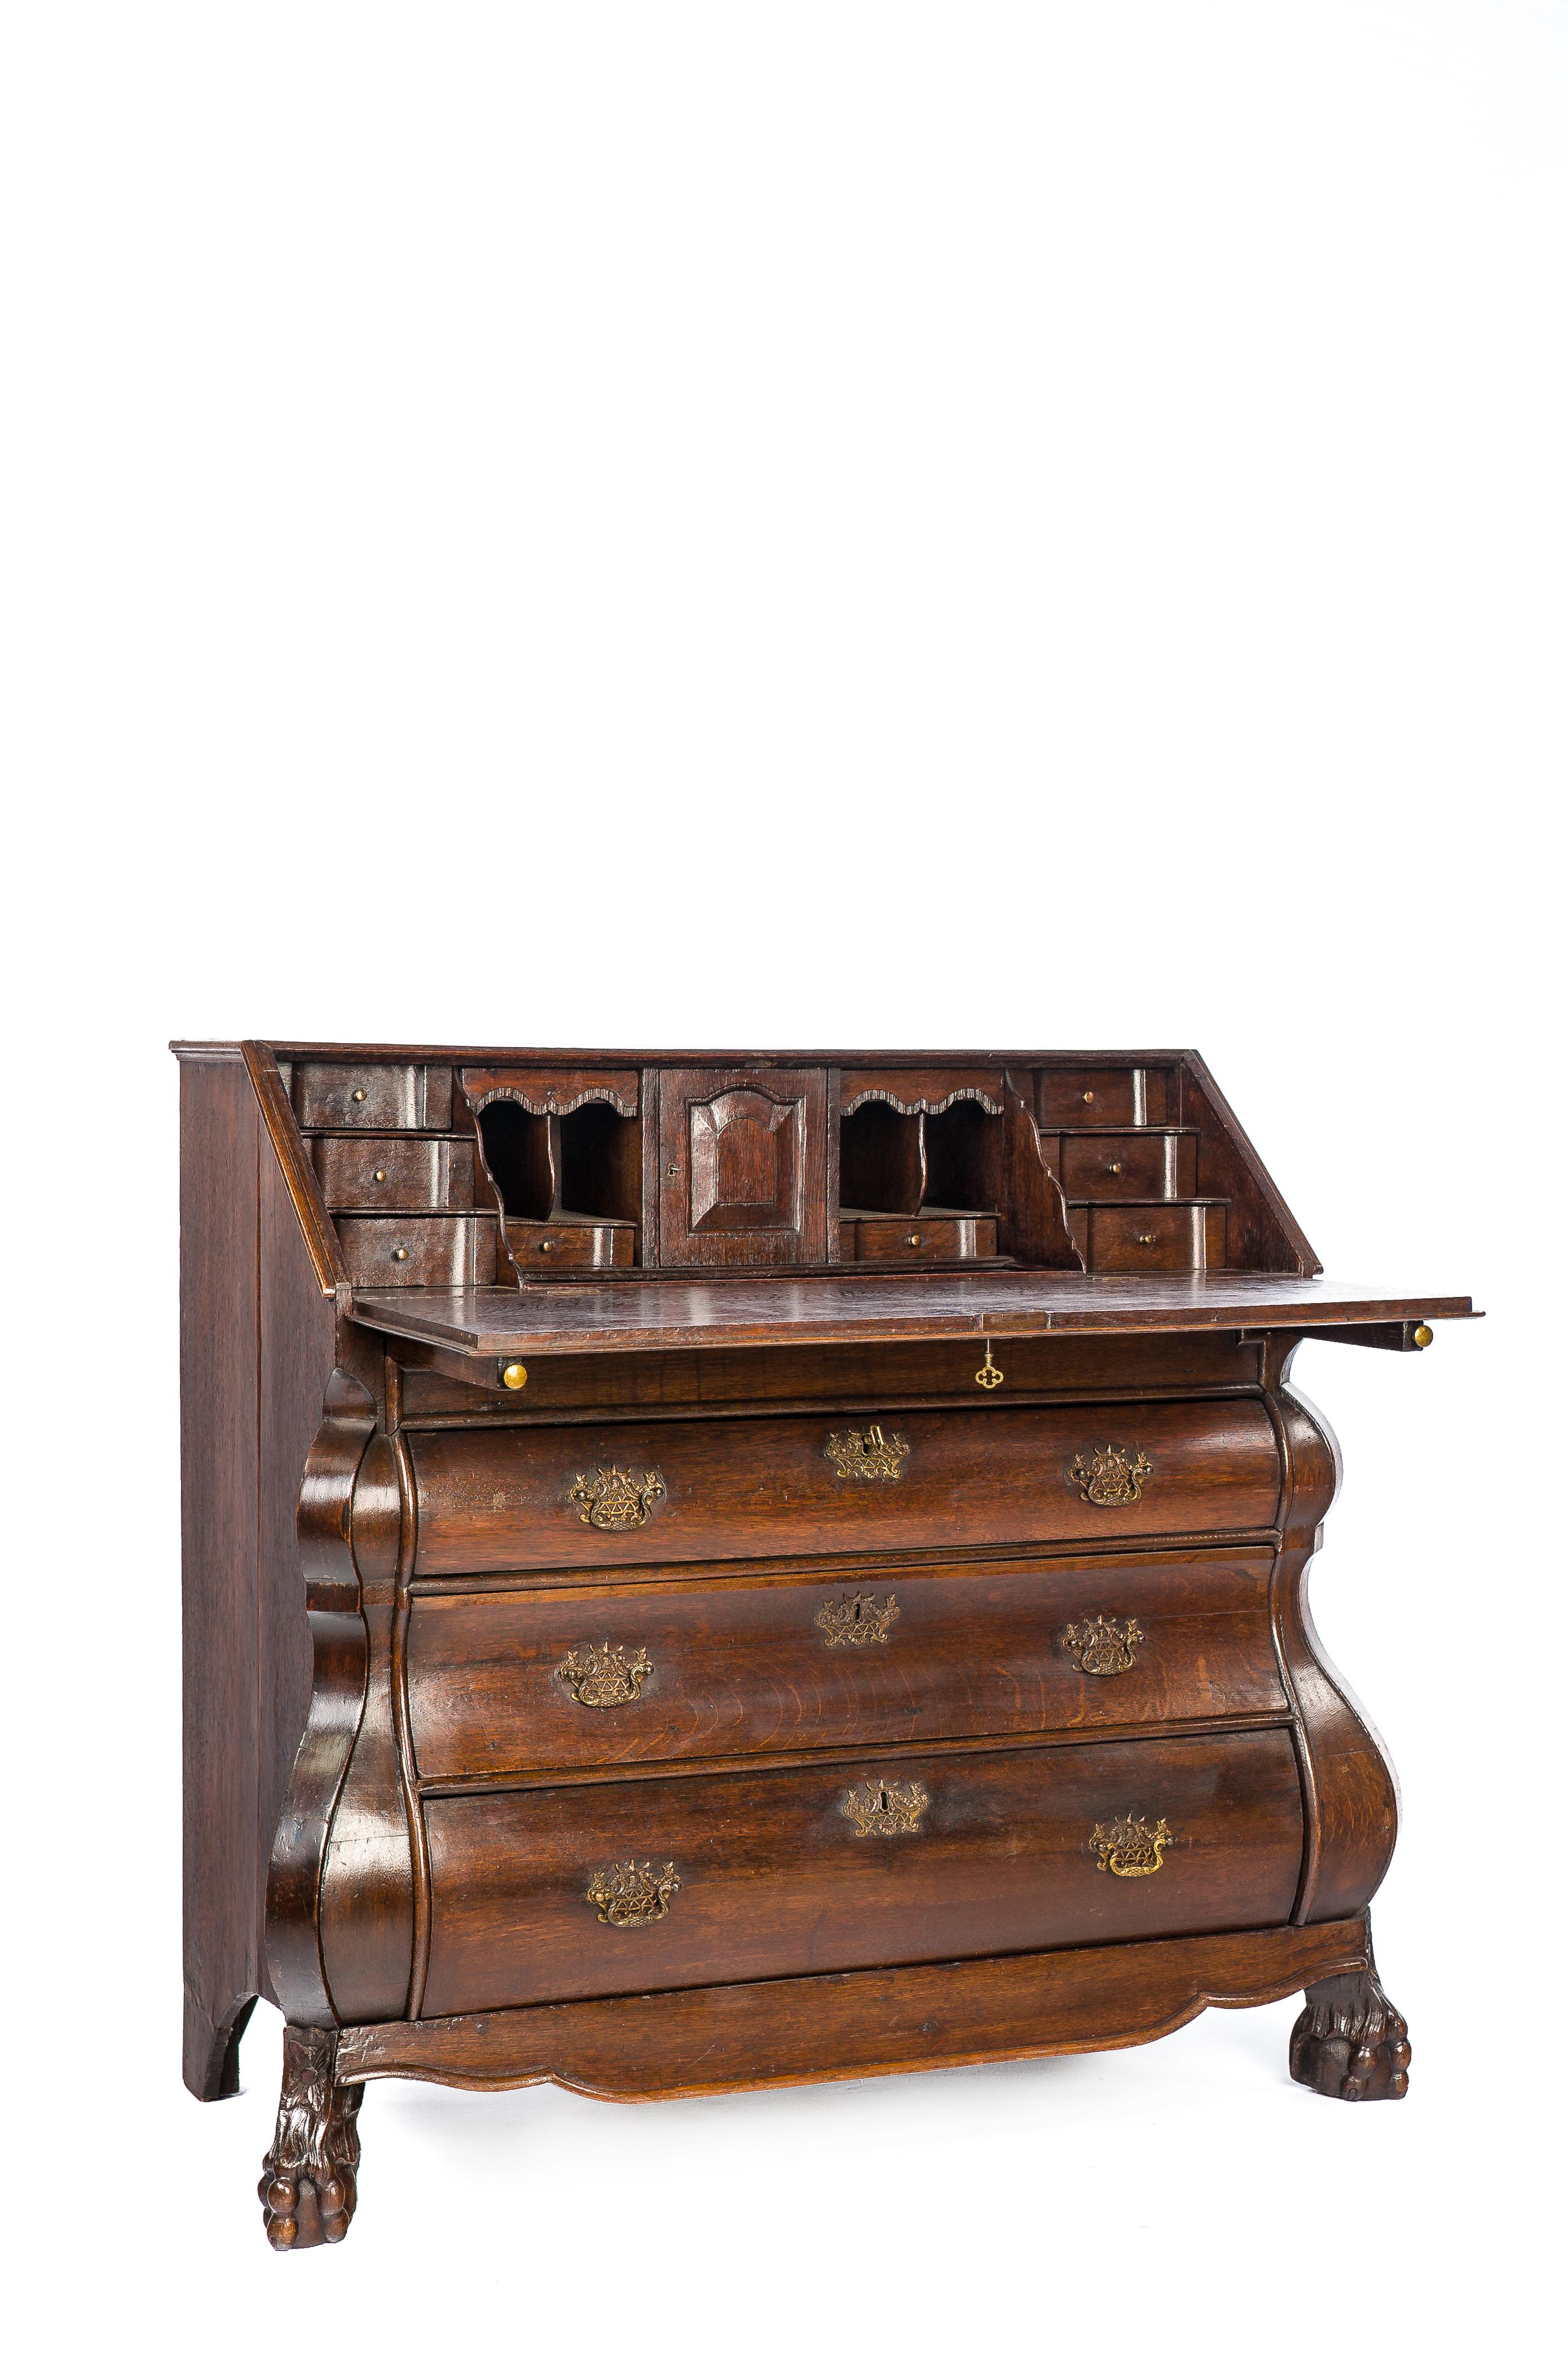 Antique 18th Century Dutch Oak Drop Front Bombe Secretary Desk Secretaire For Sale 6